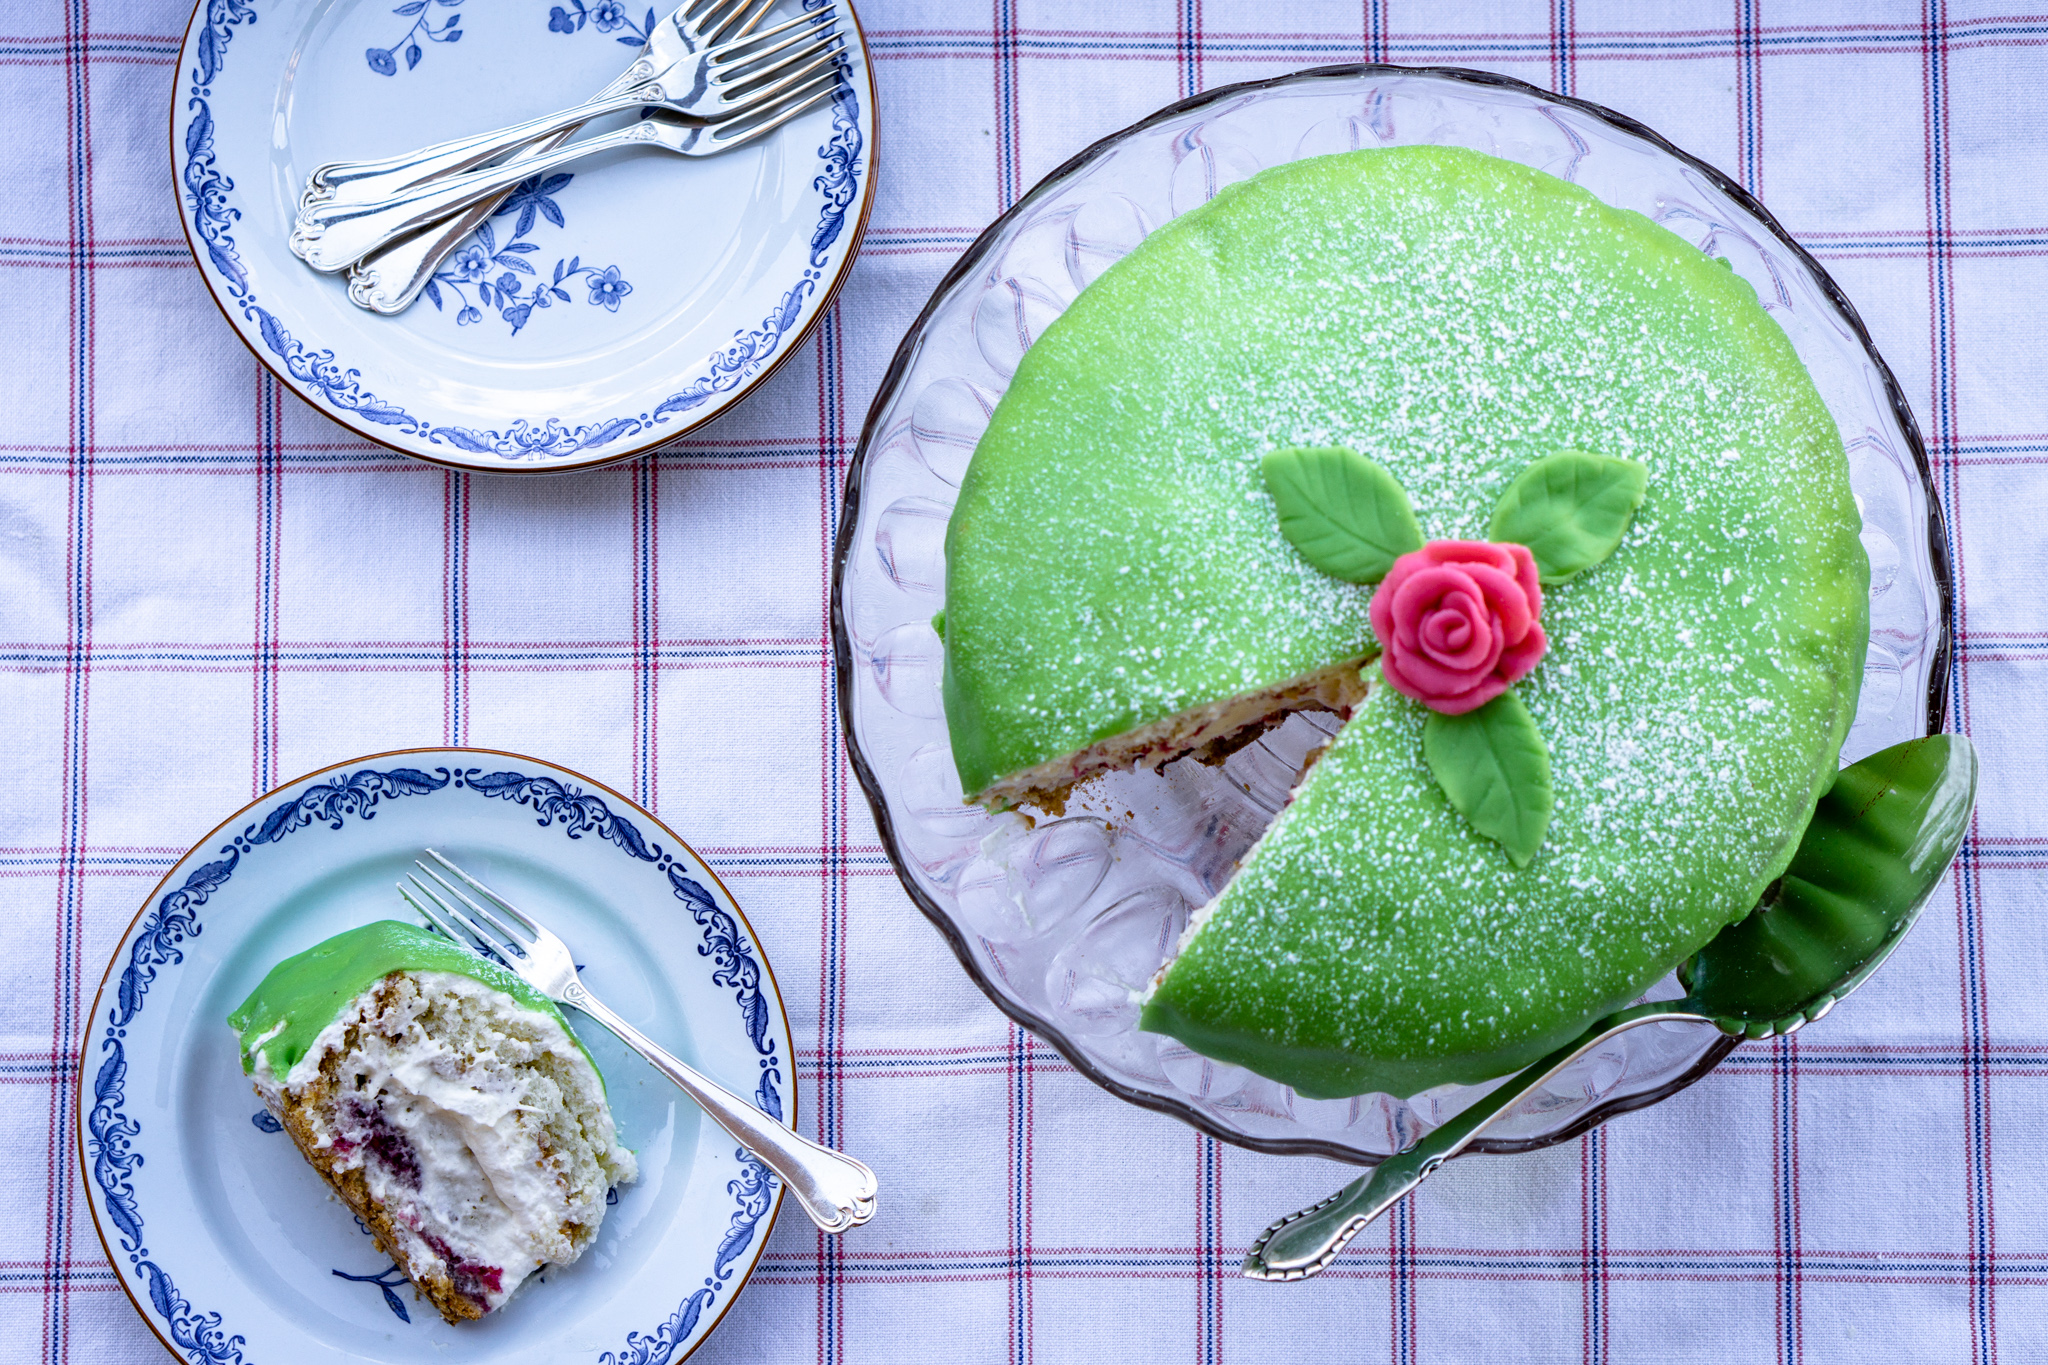 Swedish princess cake — prinsesstårta